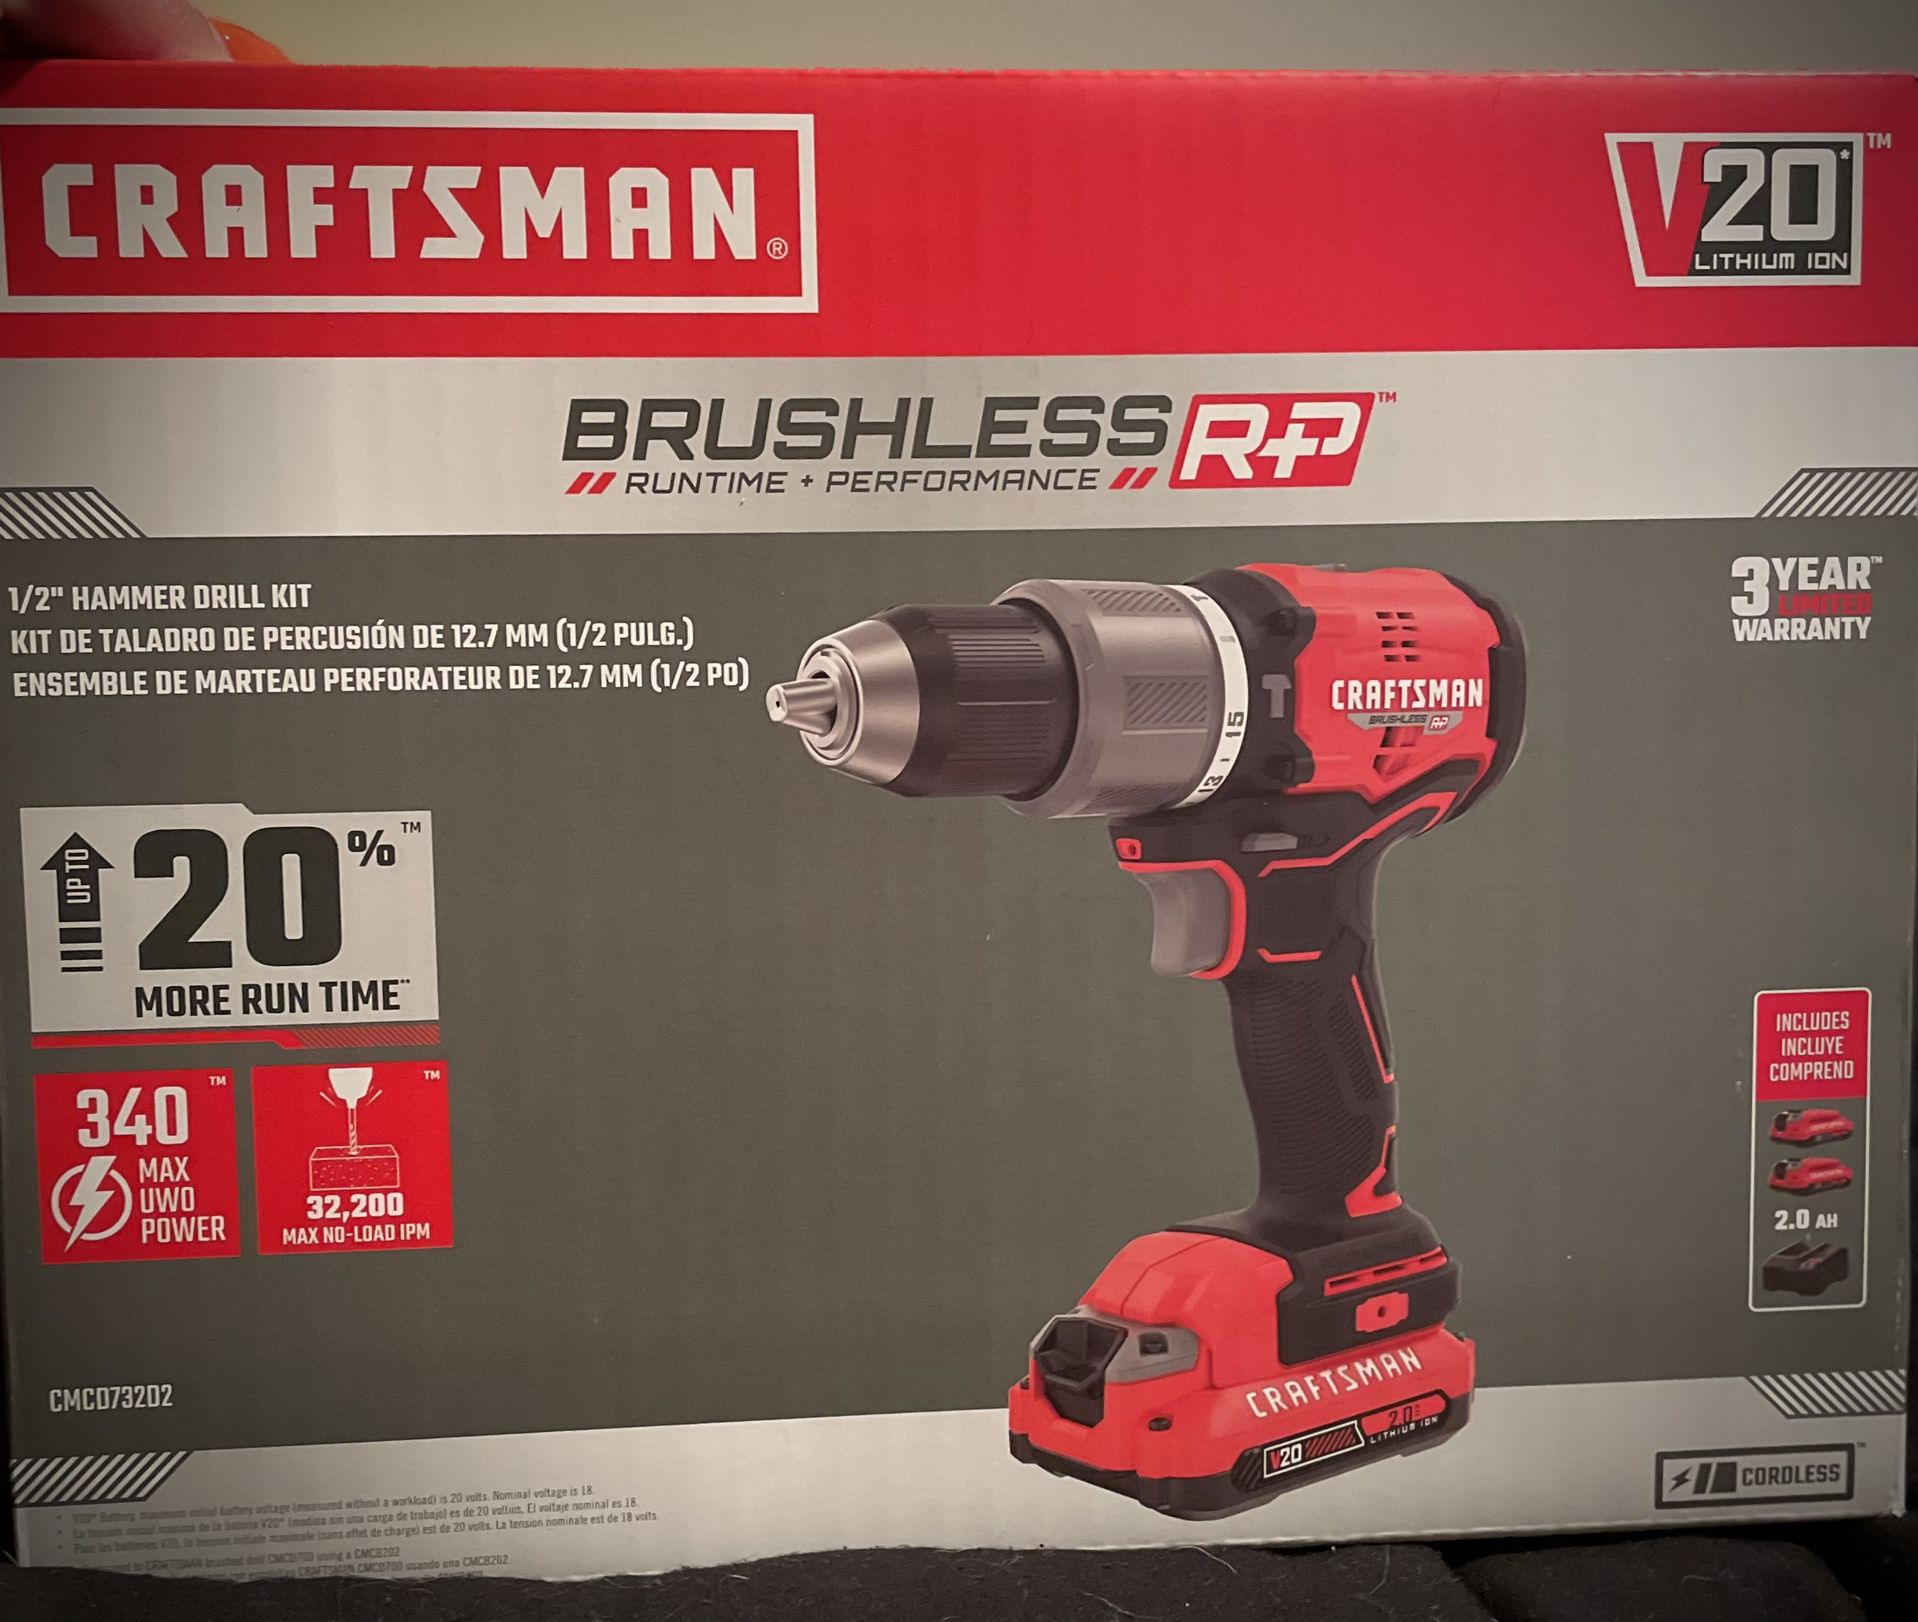 Craftsman V20 1/2" Brushless Drill Kit 